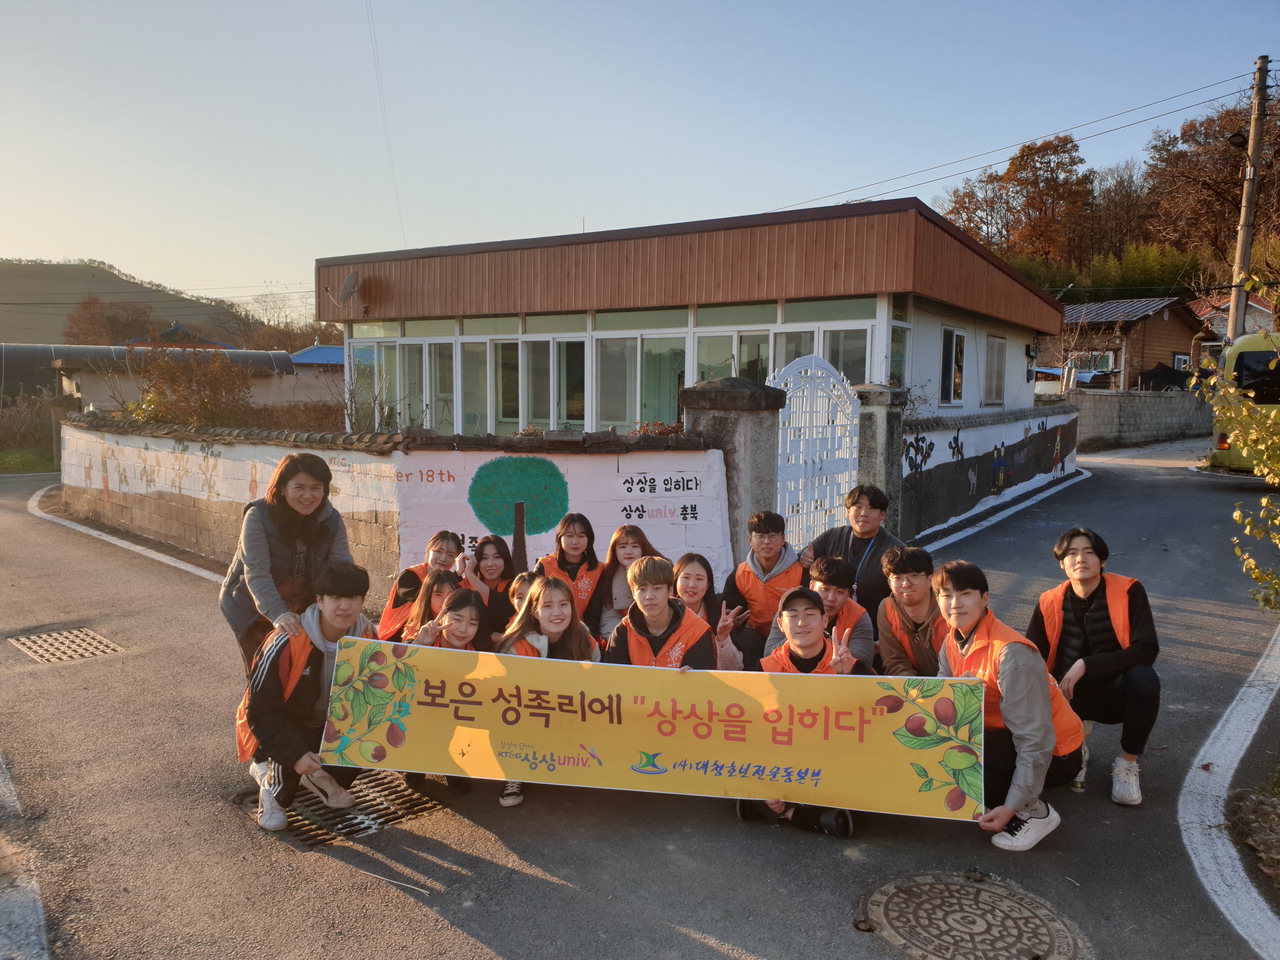 KT&G 상상유니브 충북 운영사무국은 지난 22일 충북 보은군 보은면 성족리 마을에 벽화와 환경정화 봉사활동을 진행했다. 이번 봉사활동에는 상상 발룬티어 18기와 충북지역 대학생 50여명이 동참했다.